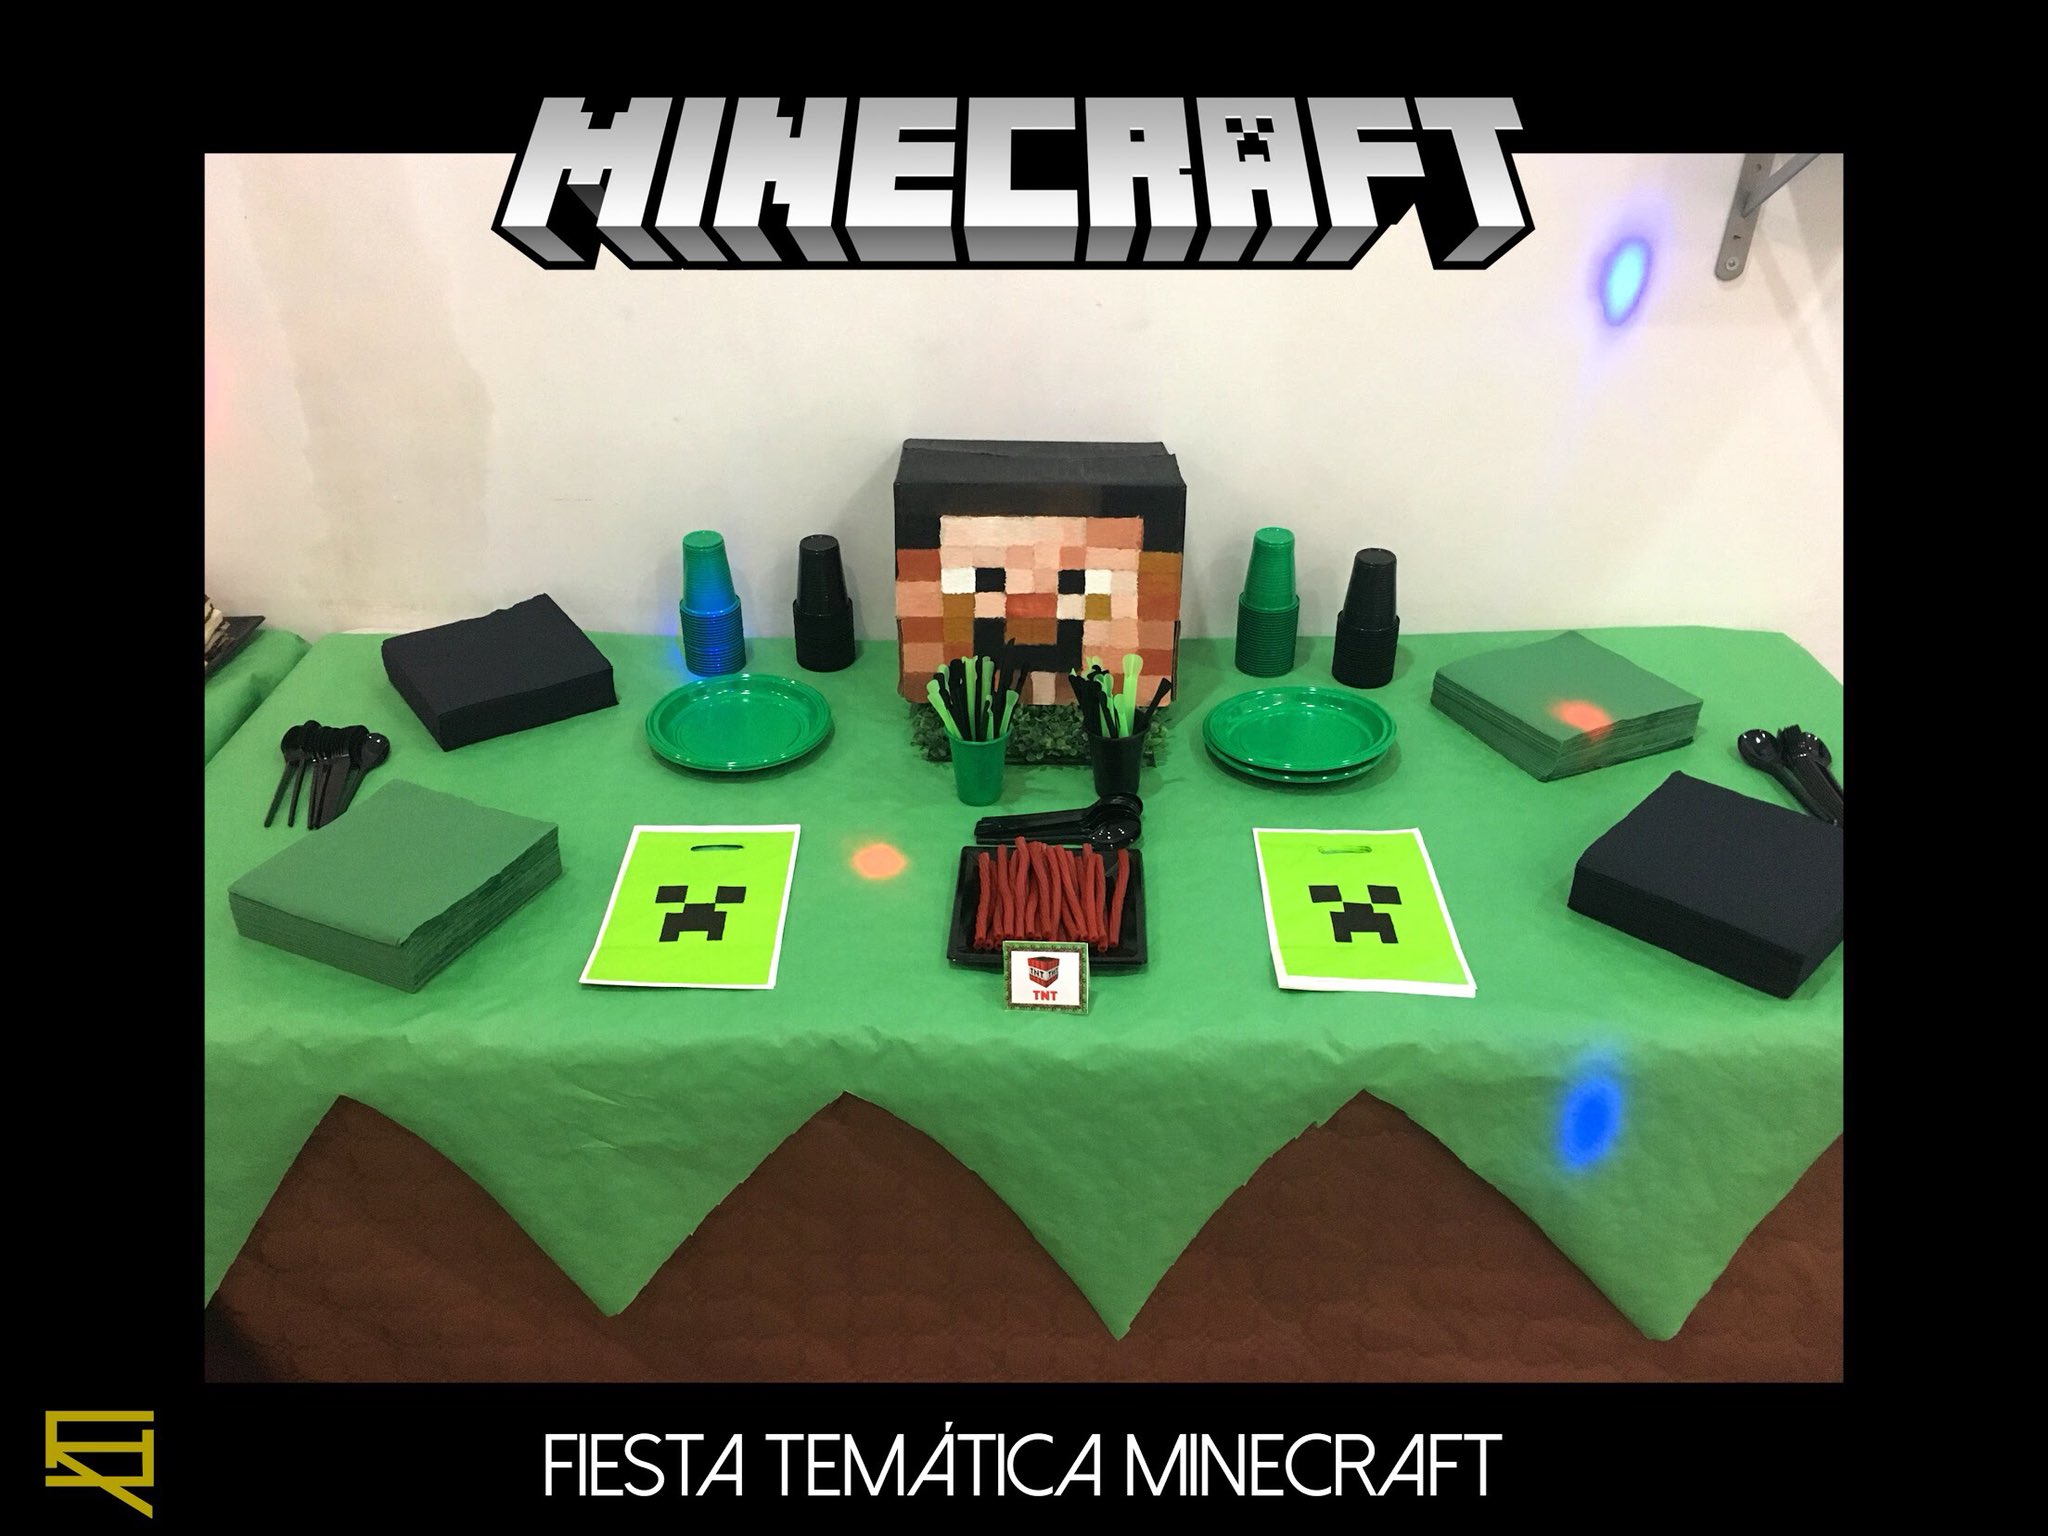 Rebaja De alguna manera Atento All Servicios Integrales on Twitter: "Fiesta temática Minecraft. #minecraft  #fiesta #party #juegos #happy #niños #PlayStation4 #Xbox  https://t.co/UBtZmG5E2K" / Twitter